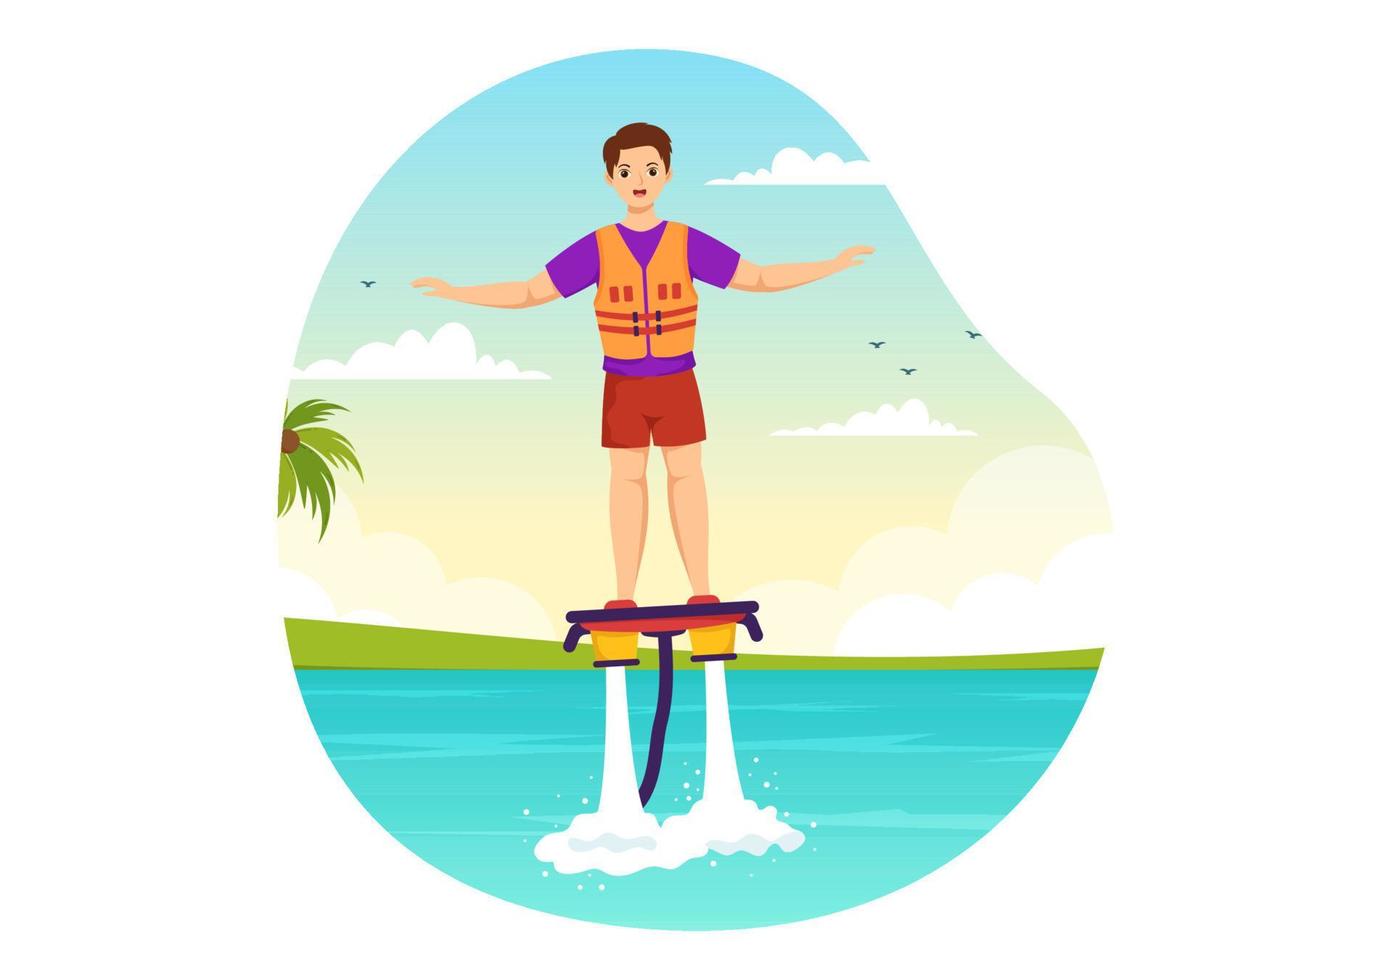 flygbräda illustration med människor ridning jet packa i sommar strand semester i platt extrem vatten sport aktivitet tecknad serie hand dragen mallar vektor